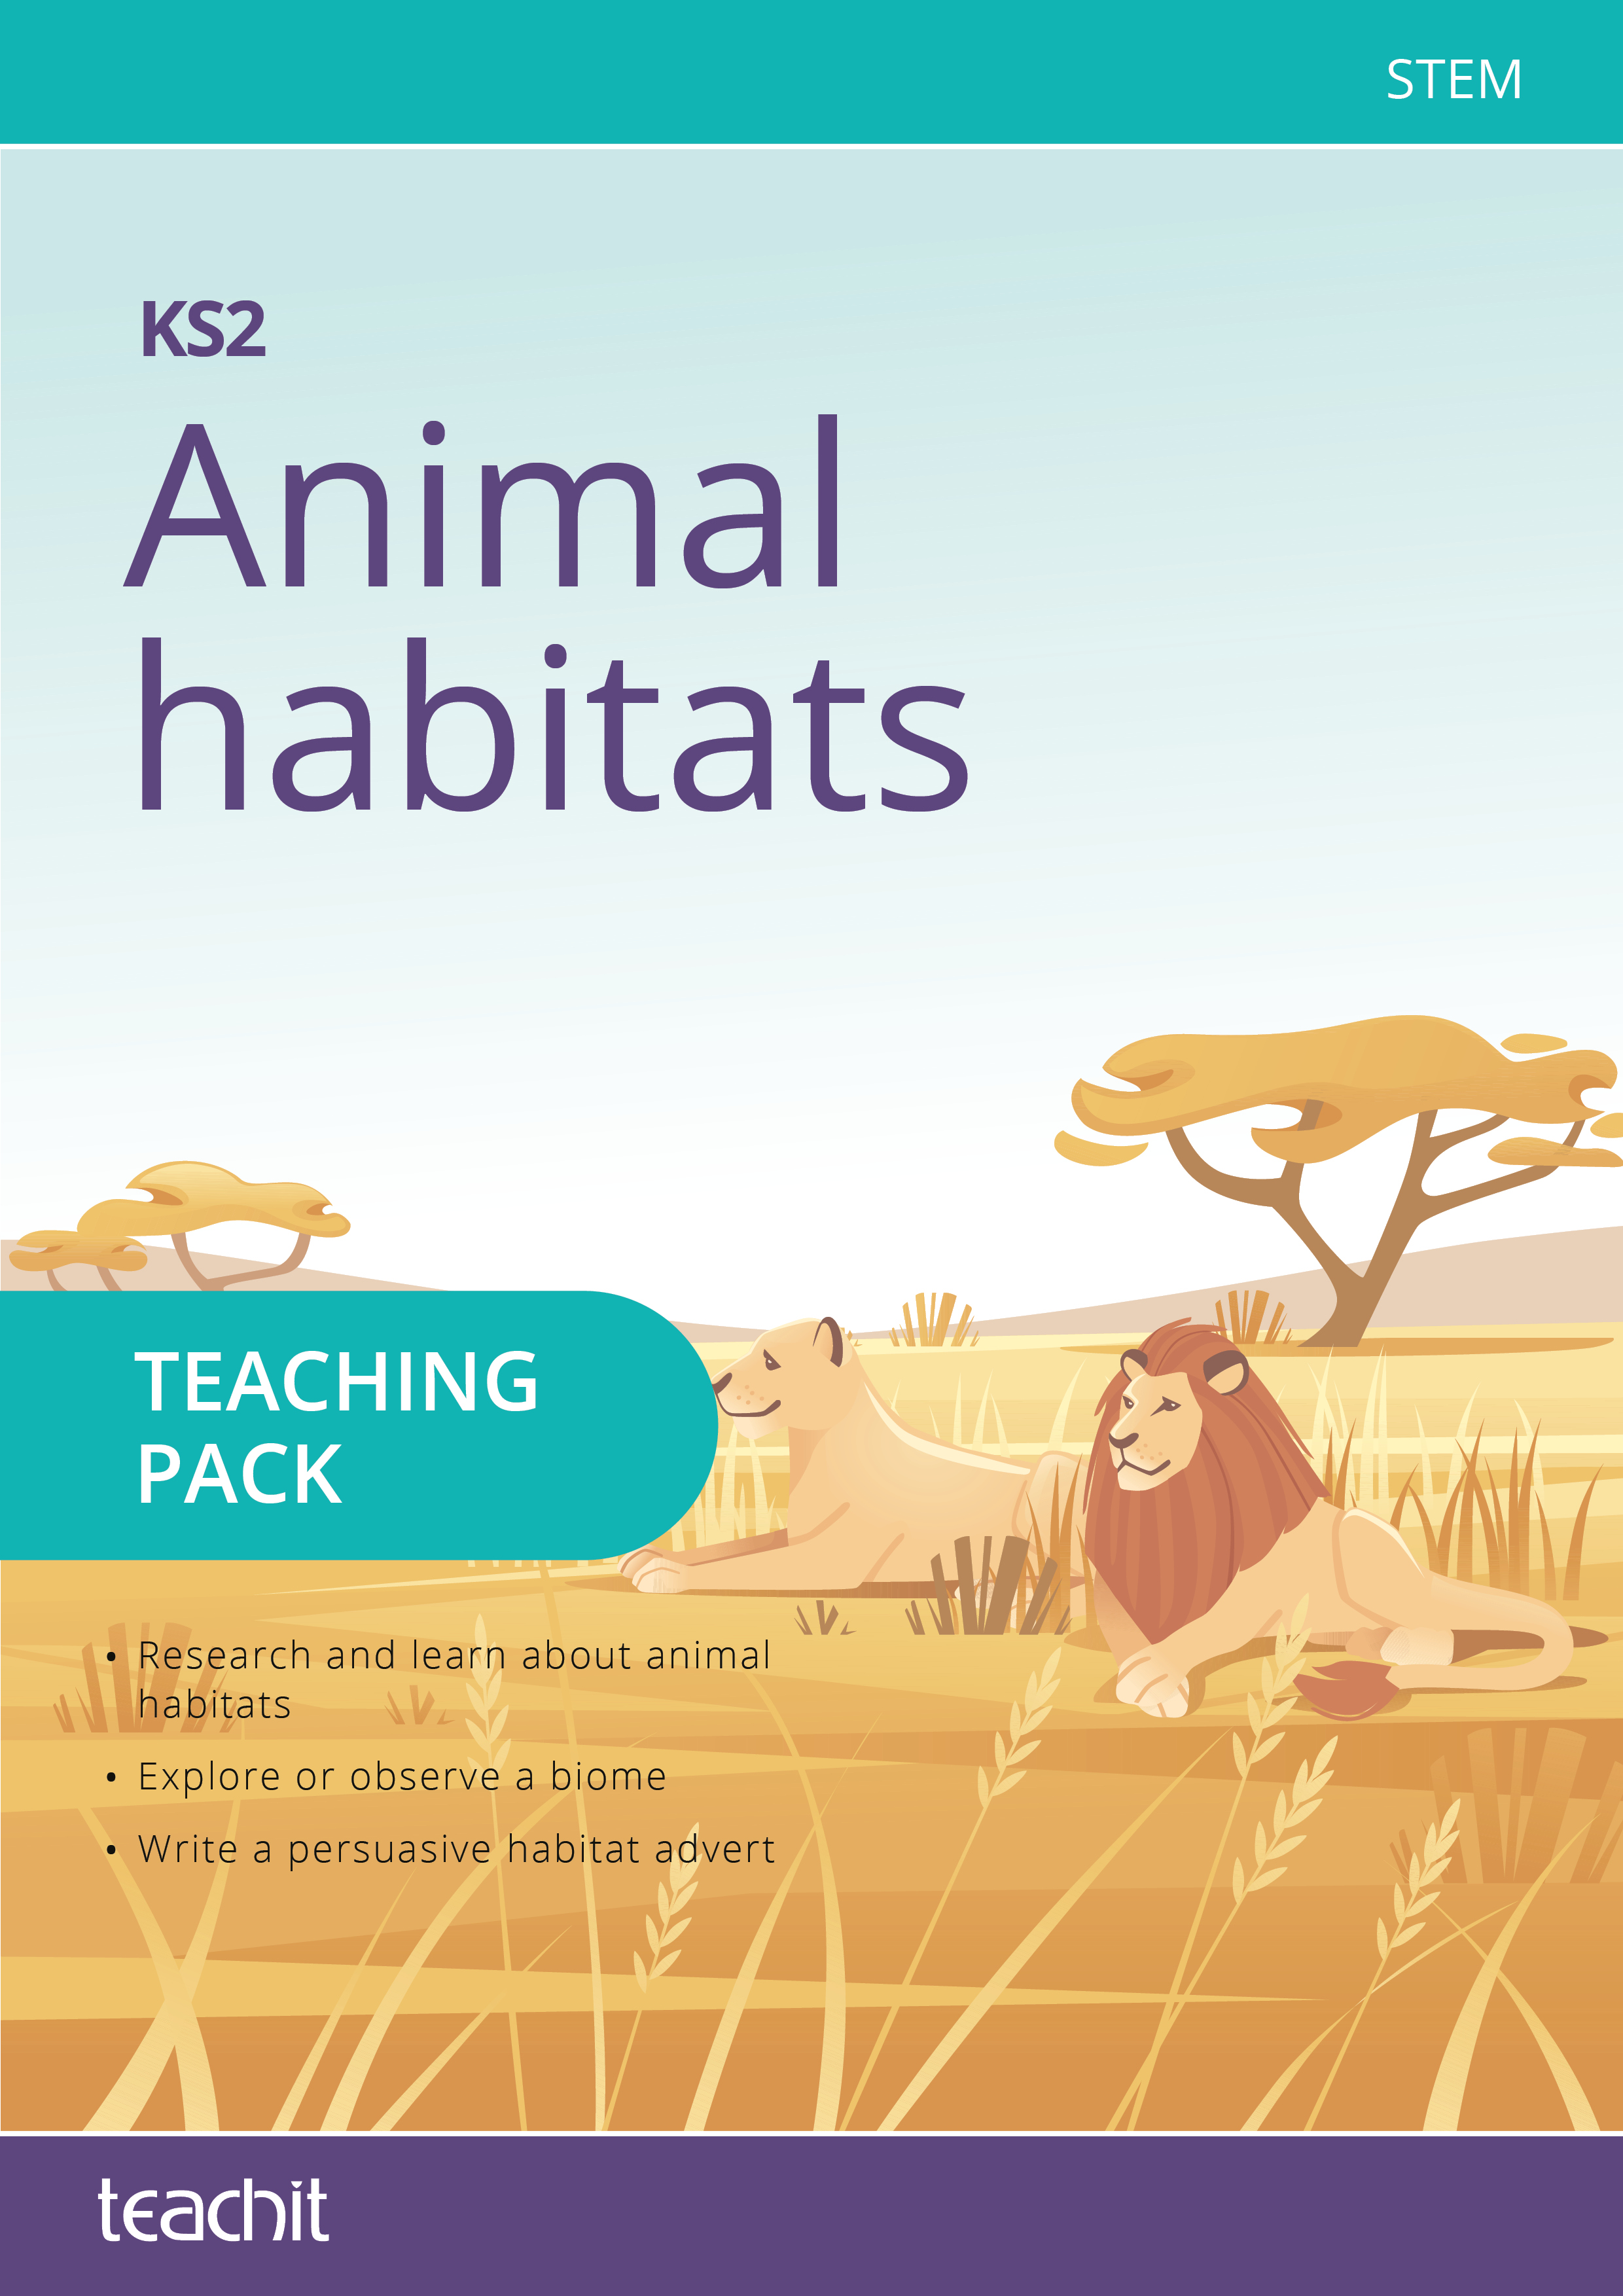 Animal habitats STEM teaching pack — KS2 | Teachit